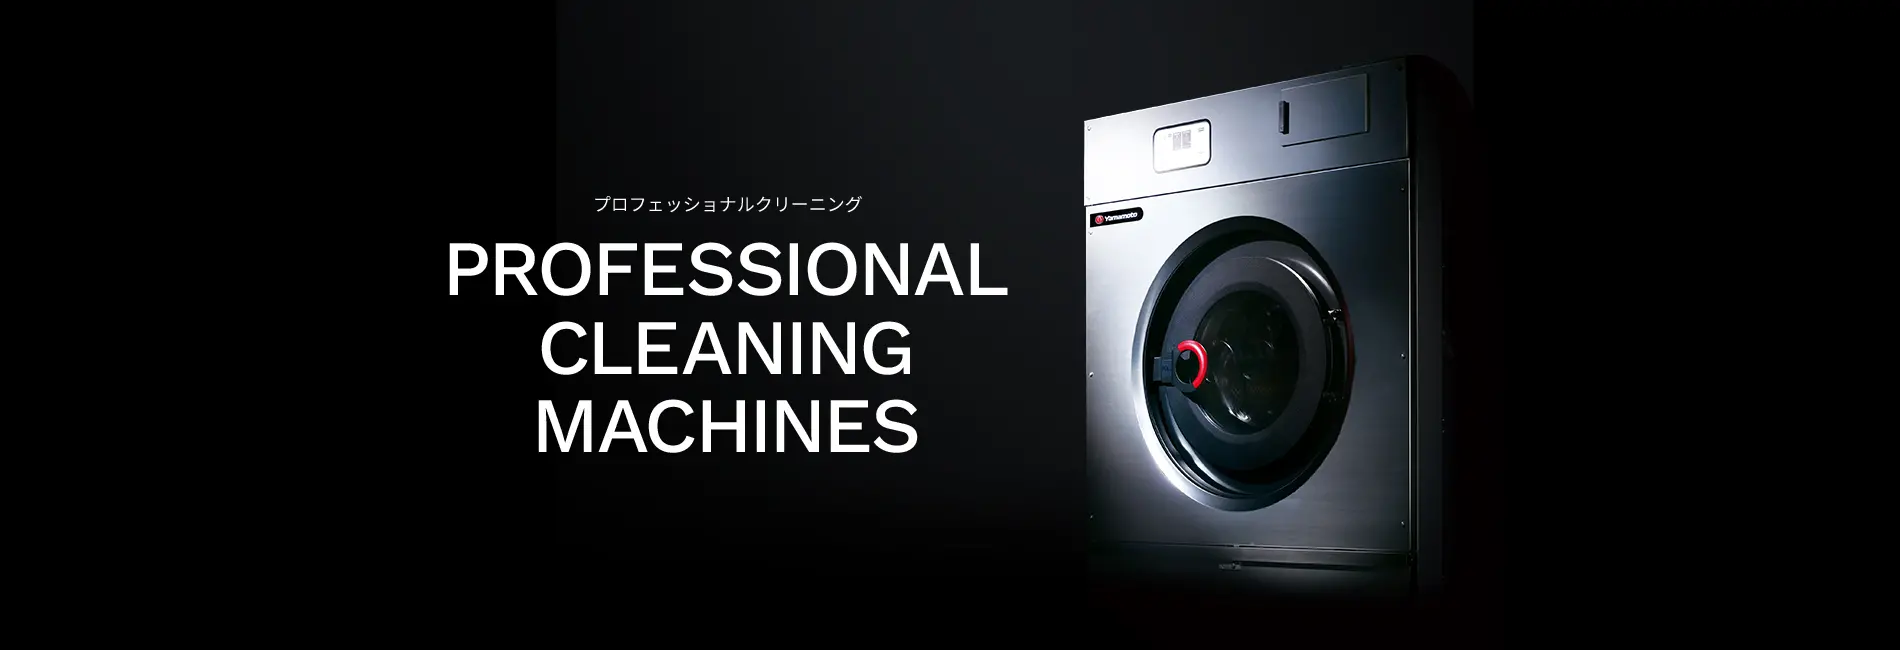 プロフェッショナルクリーニング PROFESSIONAL CLEANING MACHINES